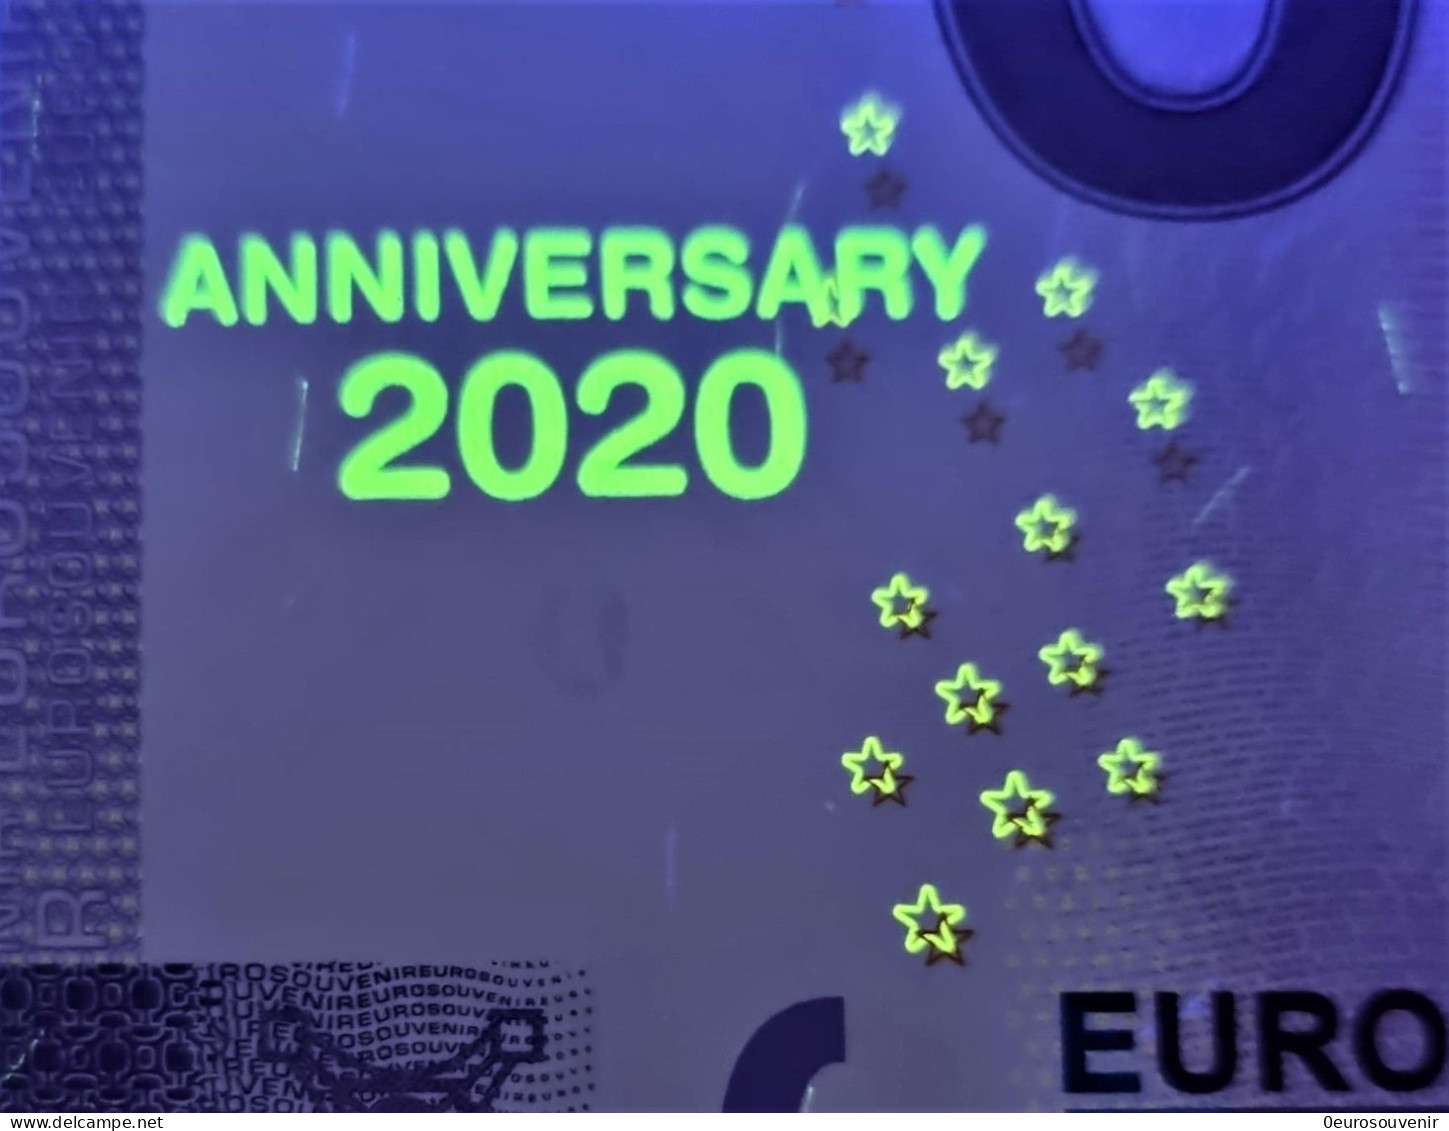 0-Euro XEGH 2020-2 HANSESTADT HATTINGEN / RUHR ALTES RATHAUS Set NORMAL+ANNIVERSARY - Privatentwürfe